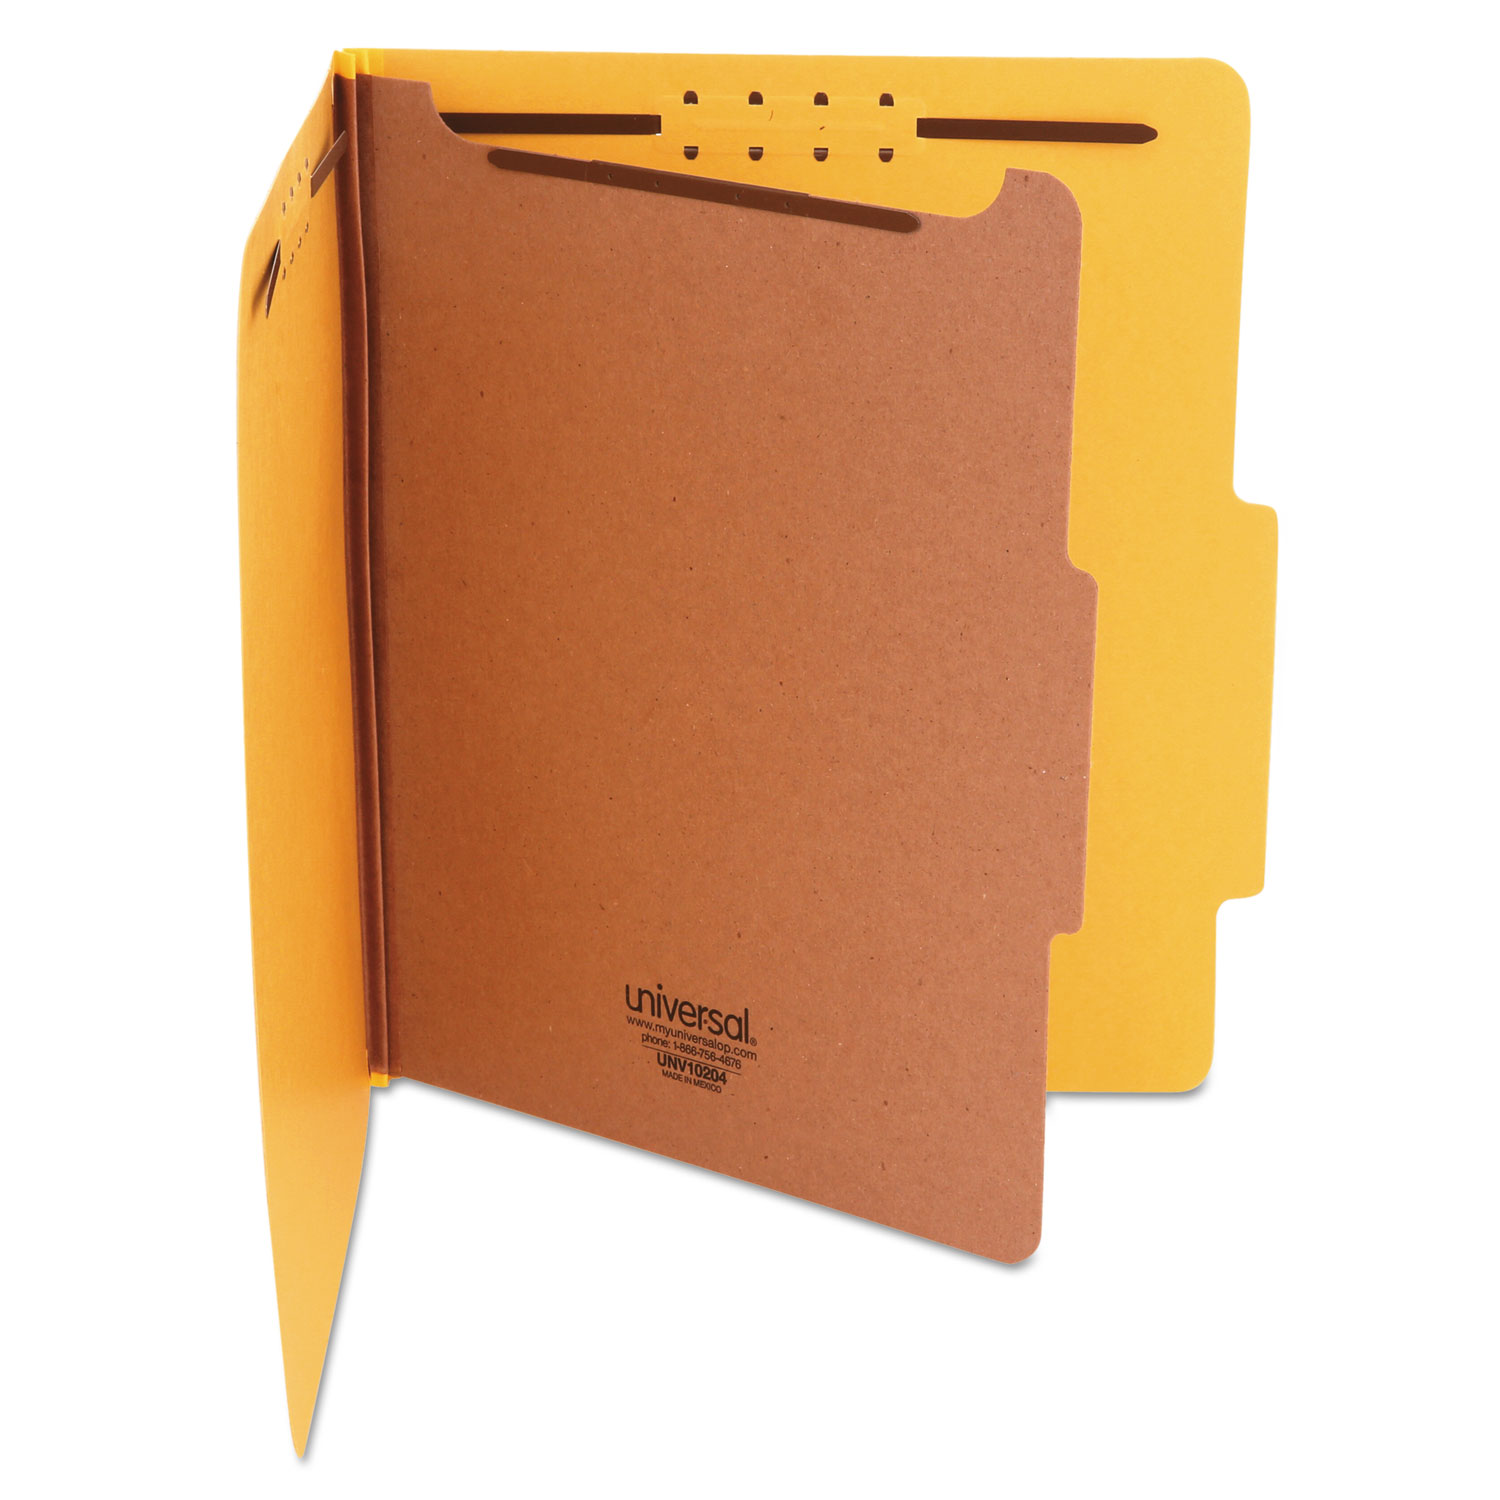  Universal UNV10204 Bright Colored Pressboard Classification Folders, 1 Divider, Letter Size, Yellow, 10/Box (UNV10204) 